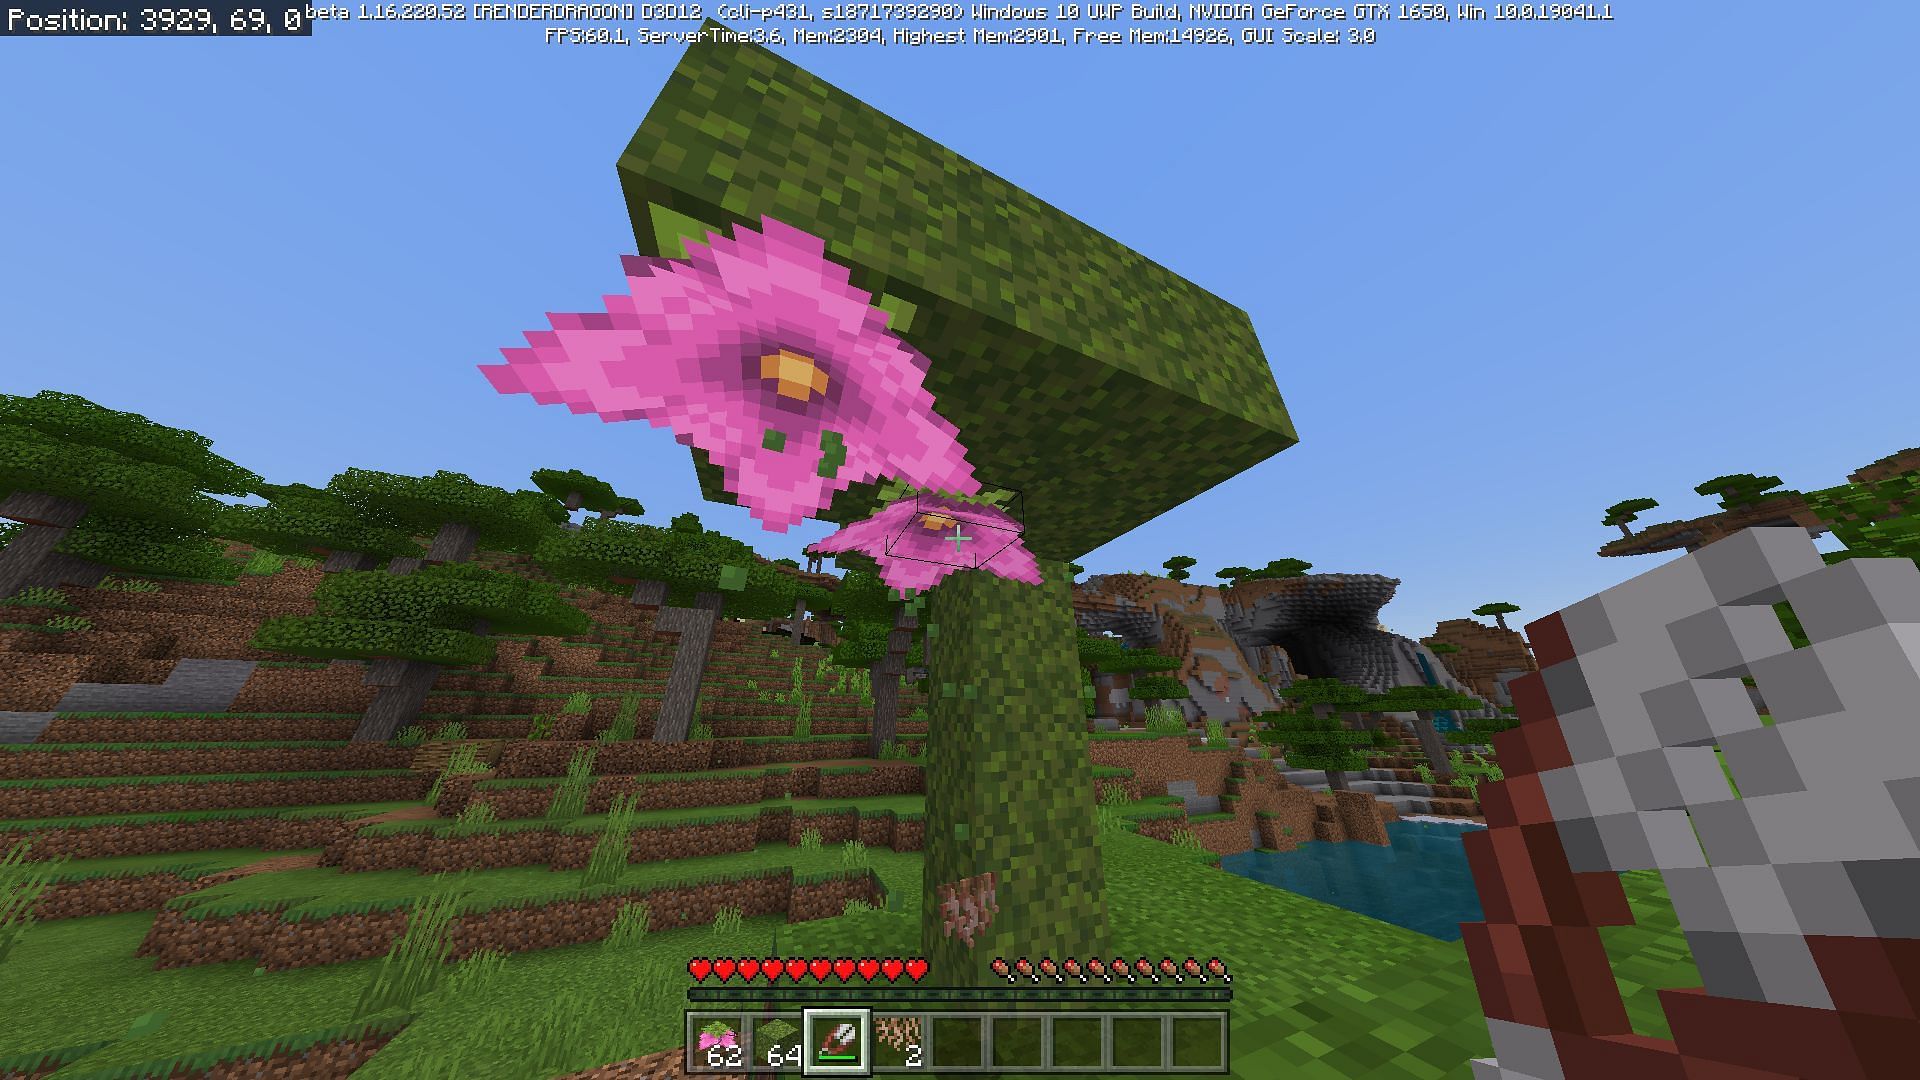 Spore blossoms, and Moss blocks (Image via Minecraft)